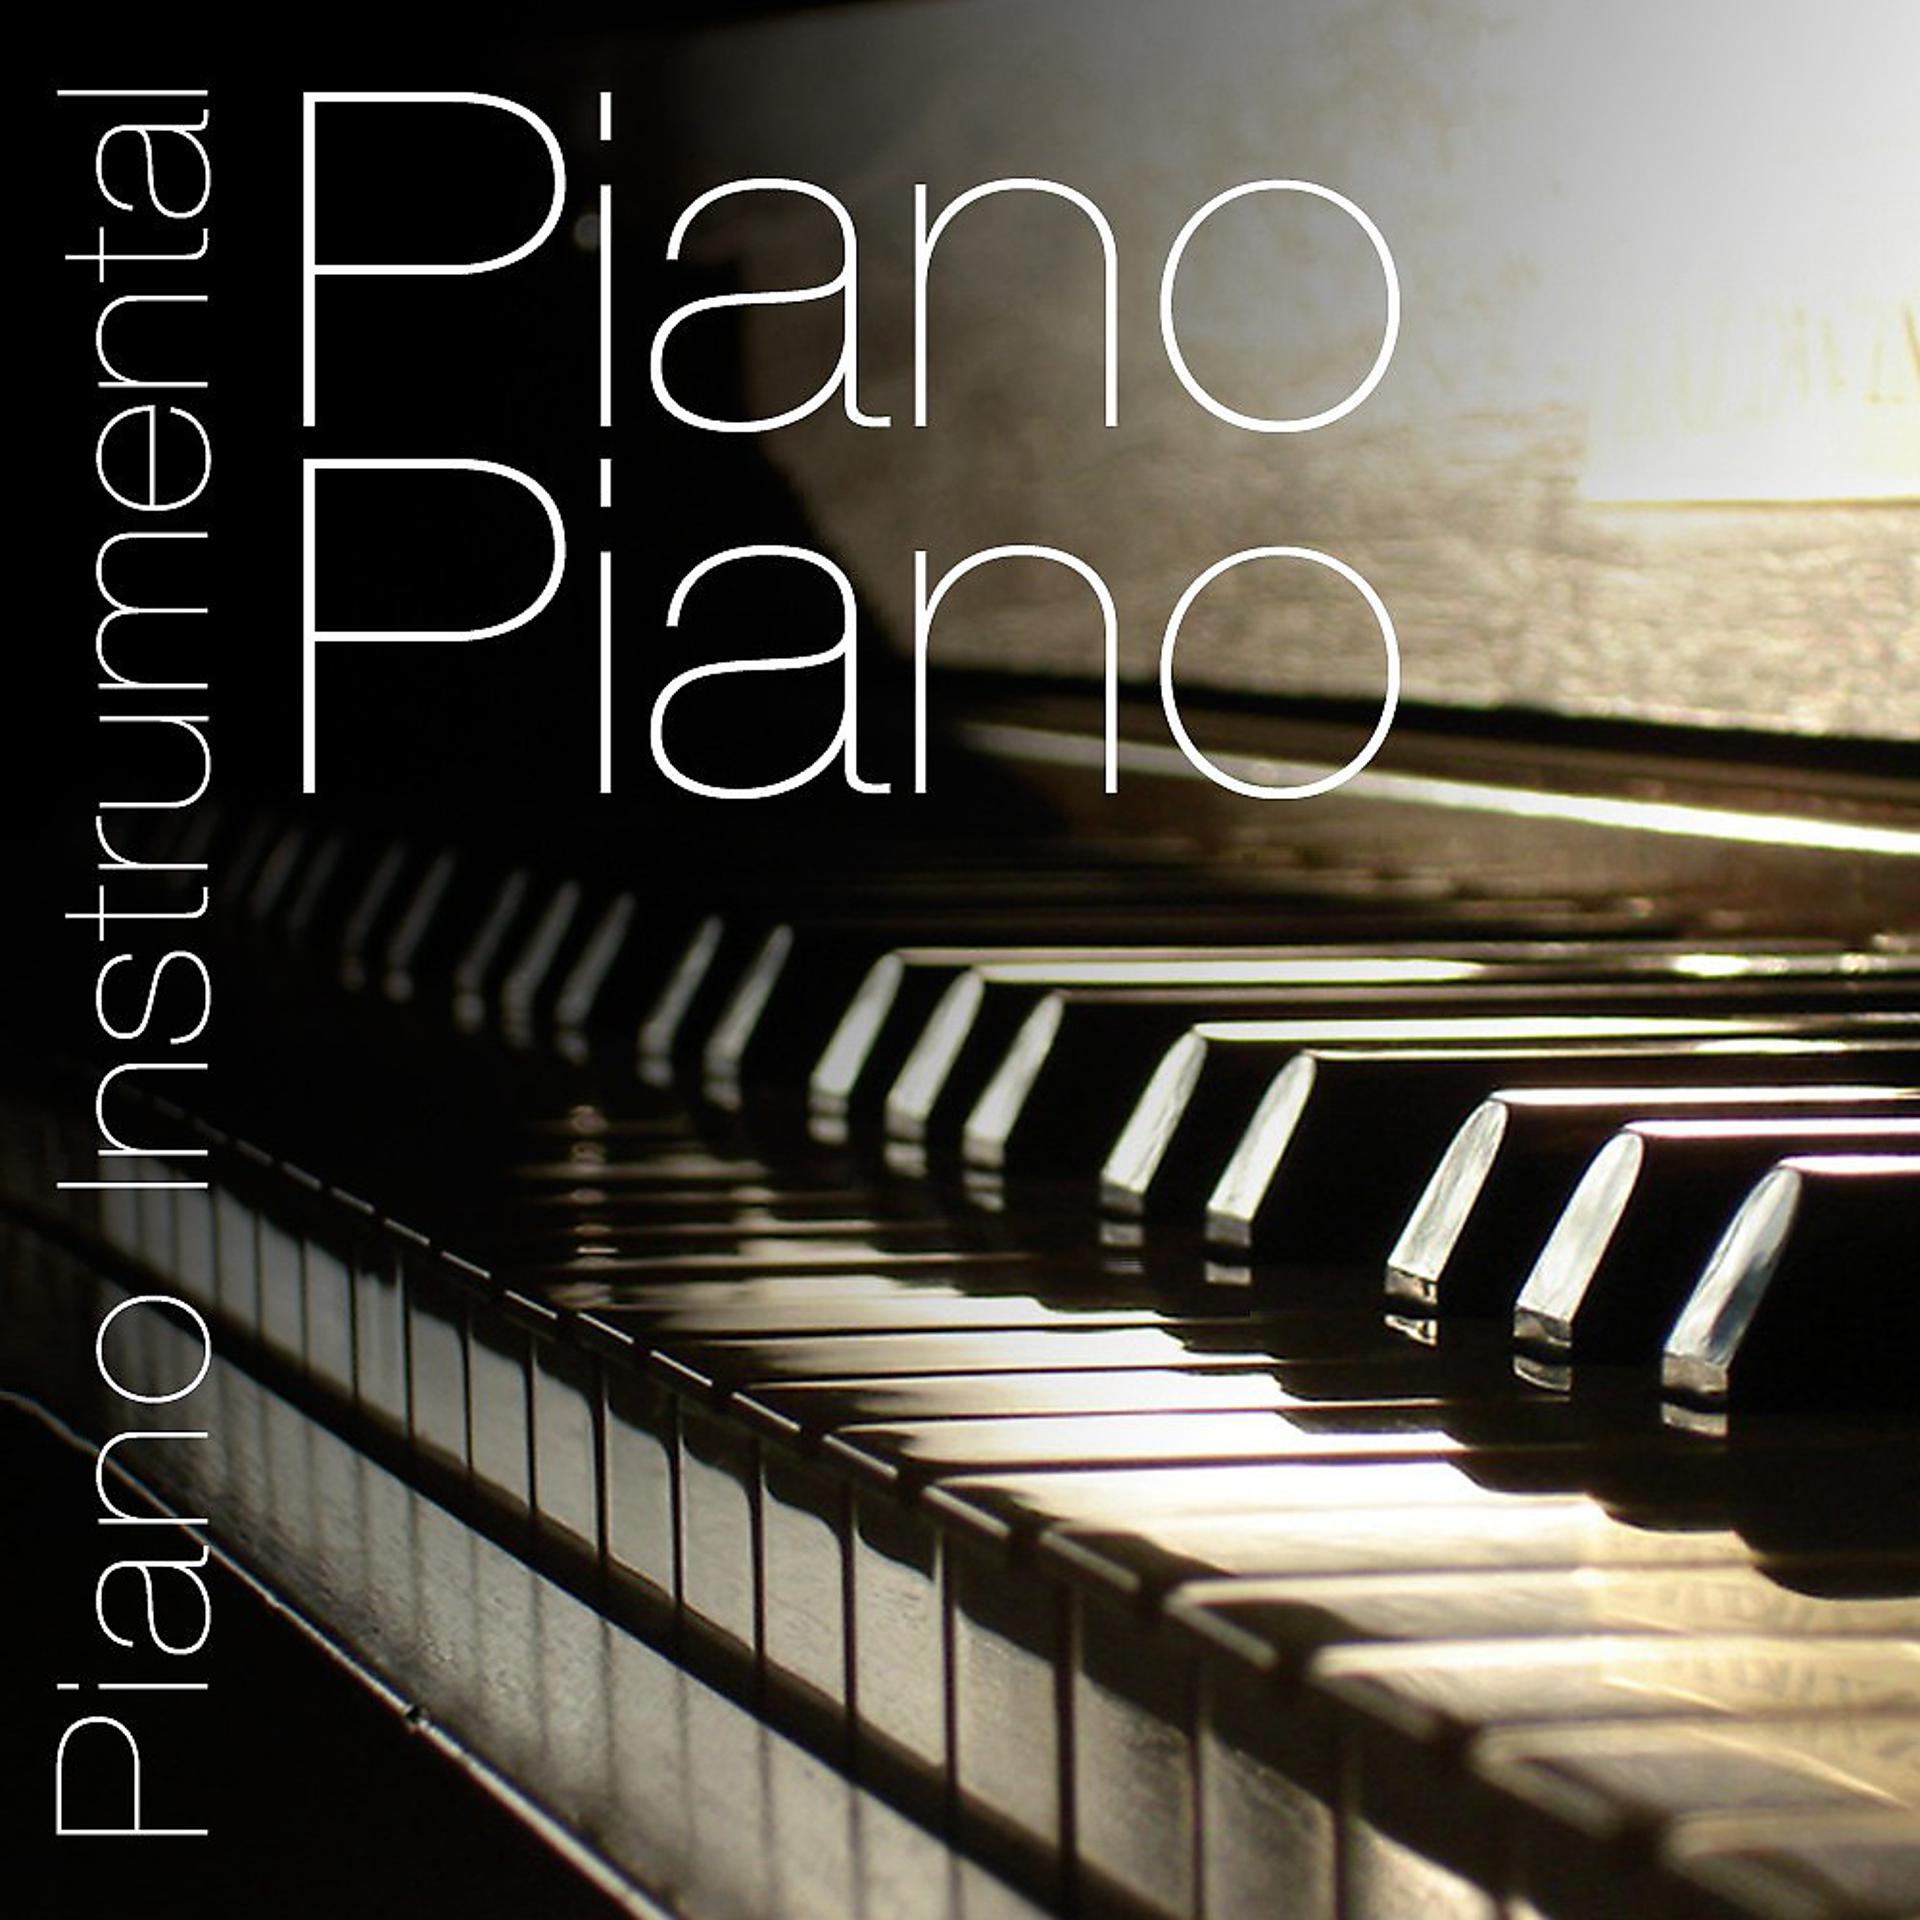 Песни на фортепиано слушать. Фортепиано обложка. Инструментал пианино. Обложка альбома с пианино. Пиано.